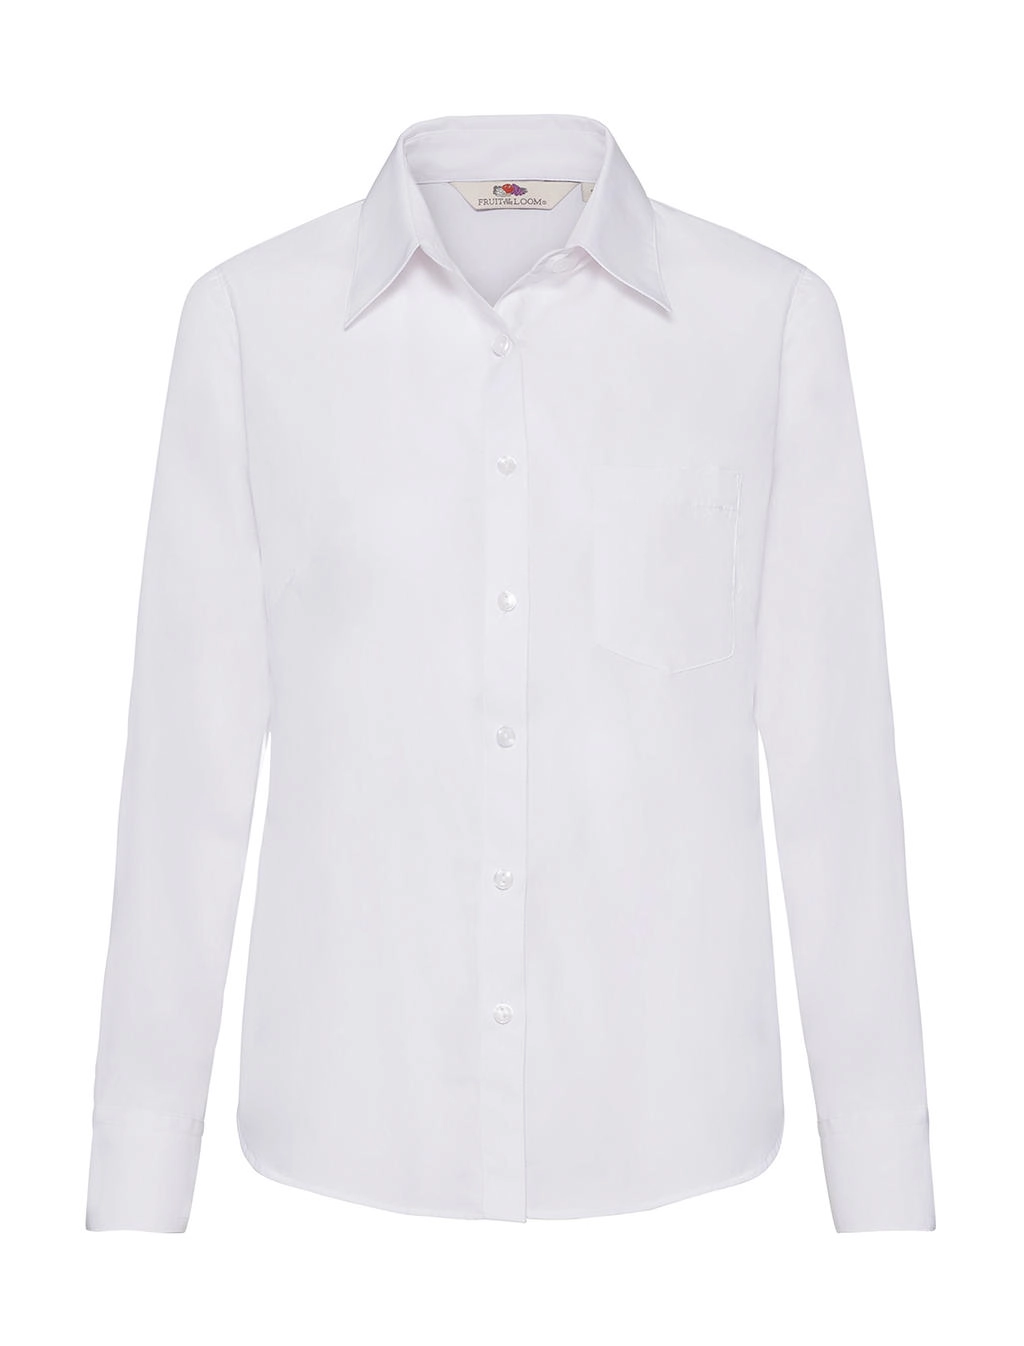 Ladies` Poplin Shirt LS zum Besticken und Bedrucken in der Farbe White mit Ihren Logo, Schriftzug oder Motiv.